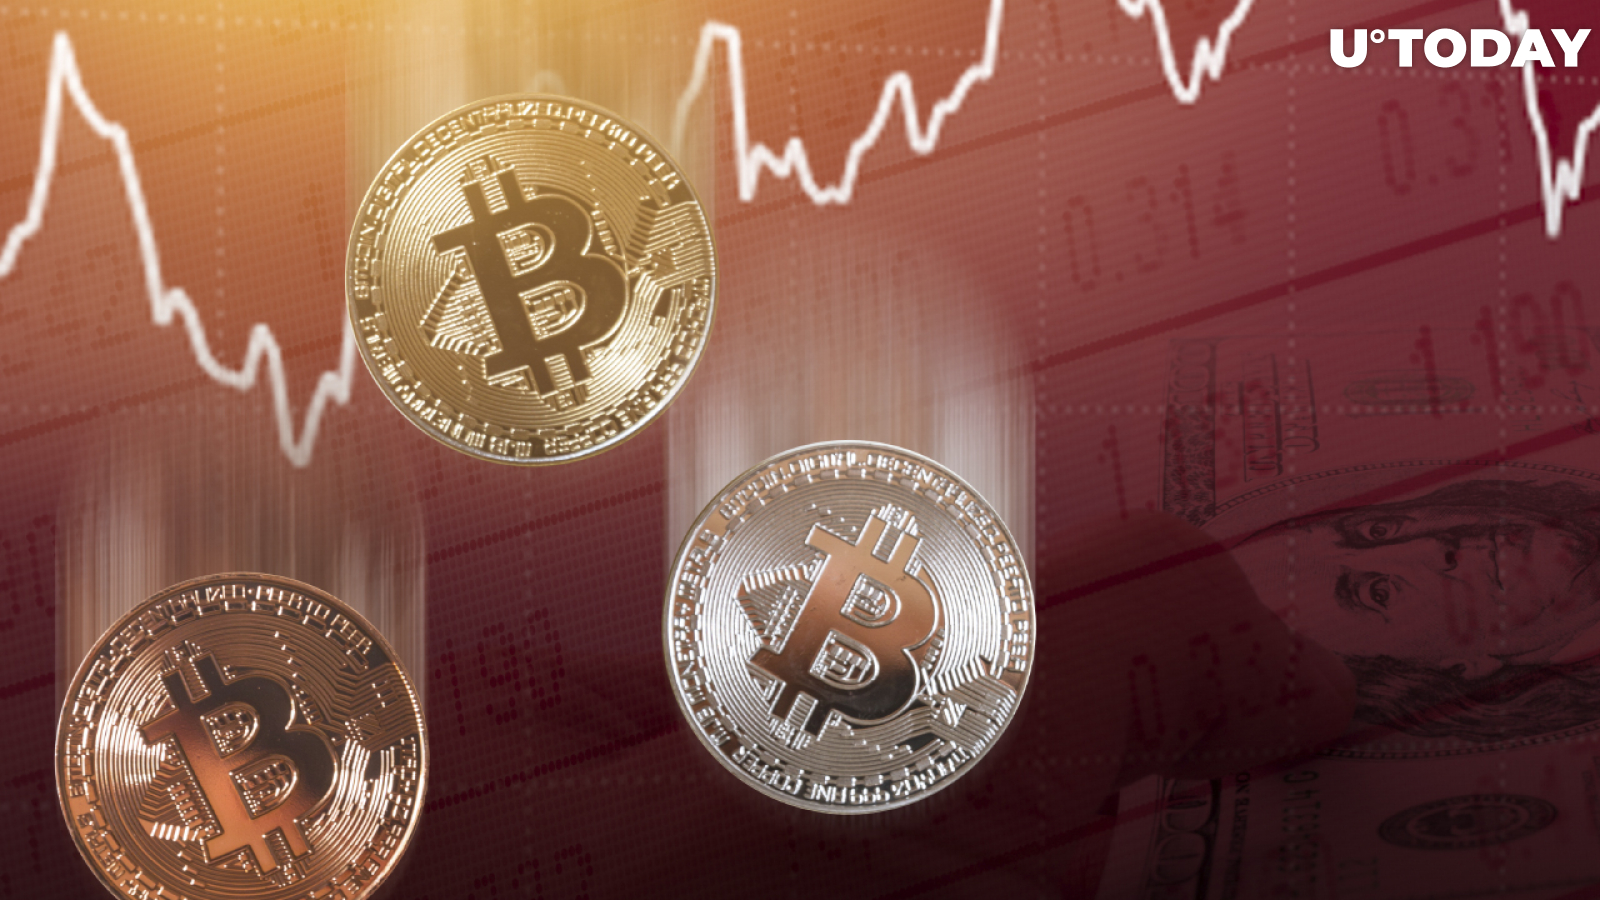 Bitcoin's Recent Drop Below $60K Is Not Worrisome, Analyst Says